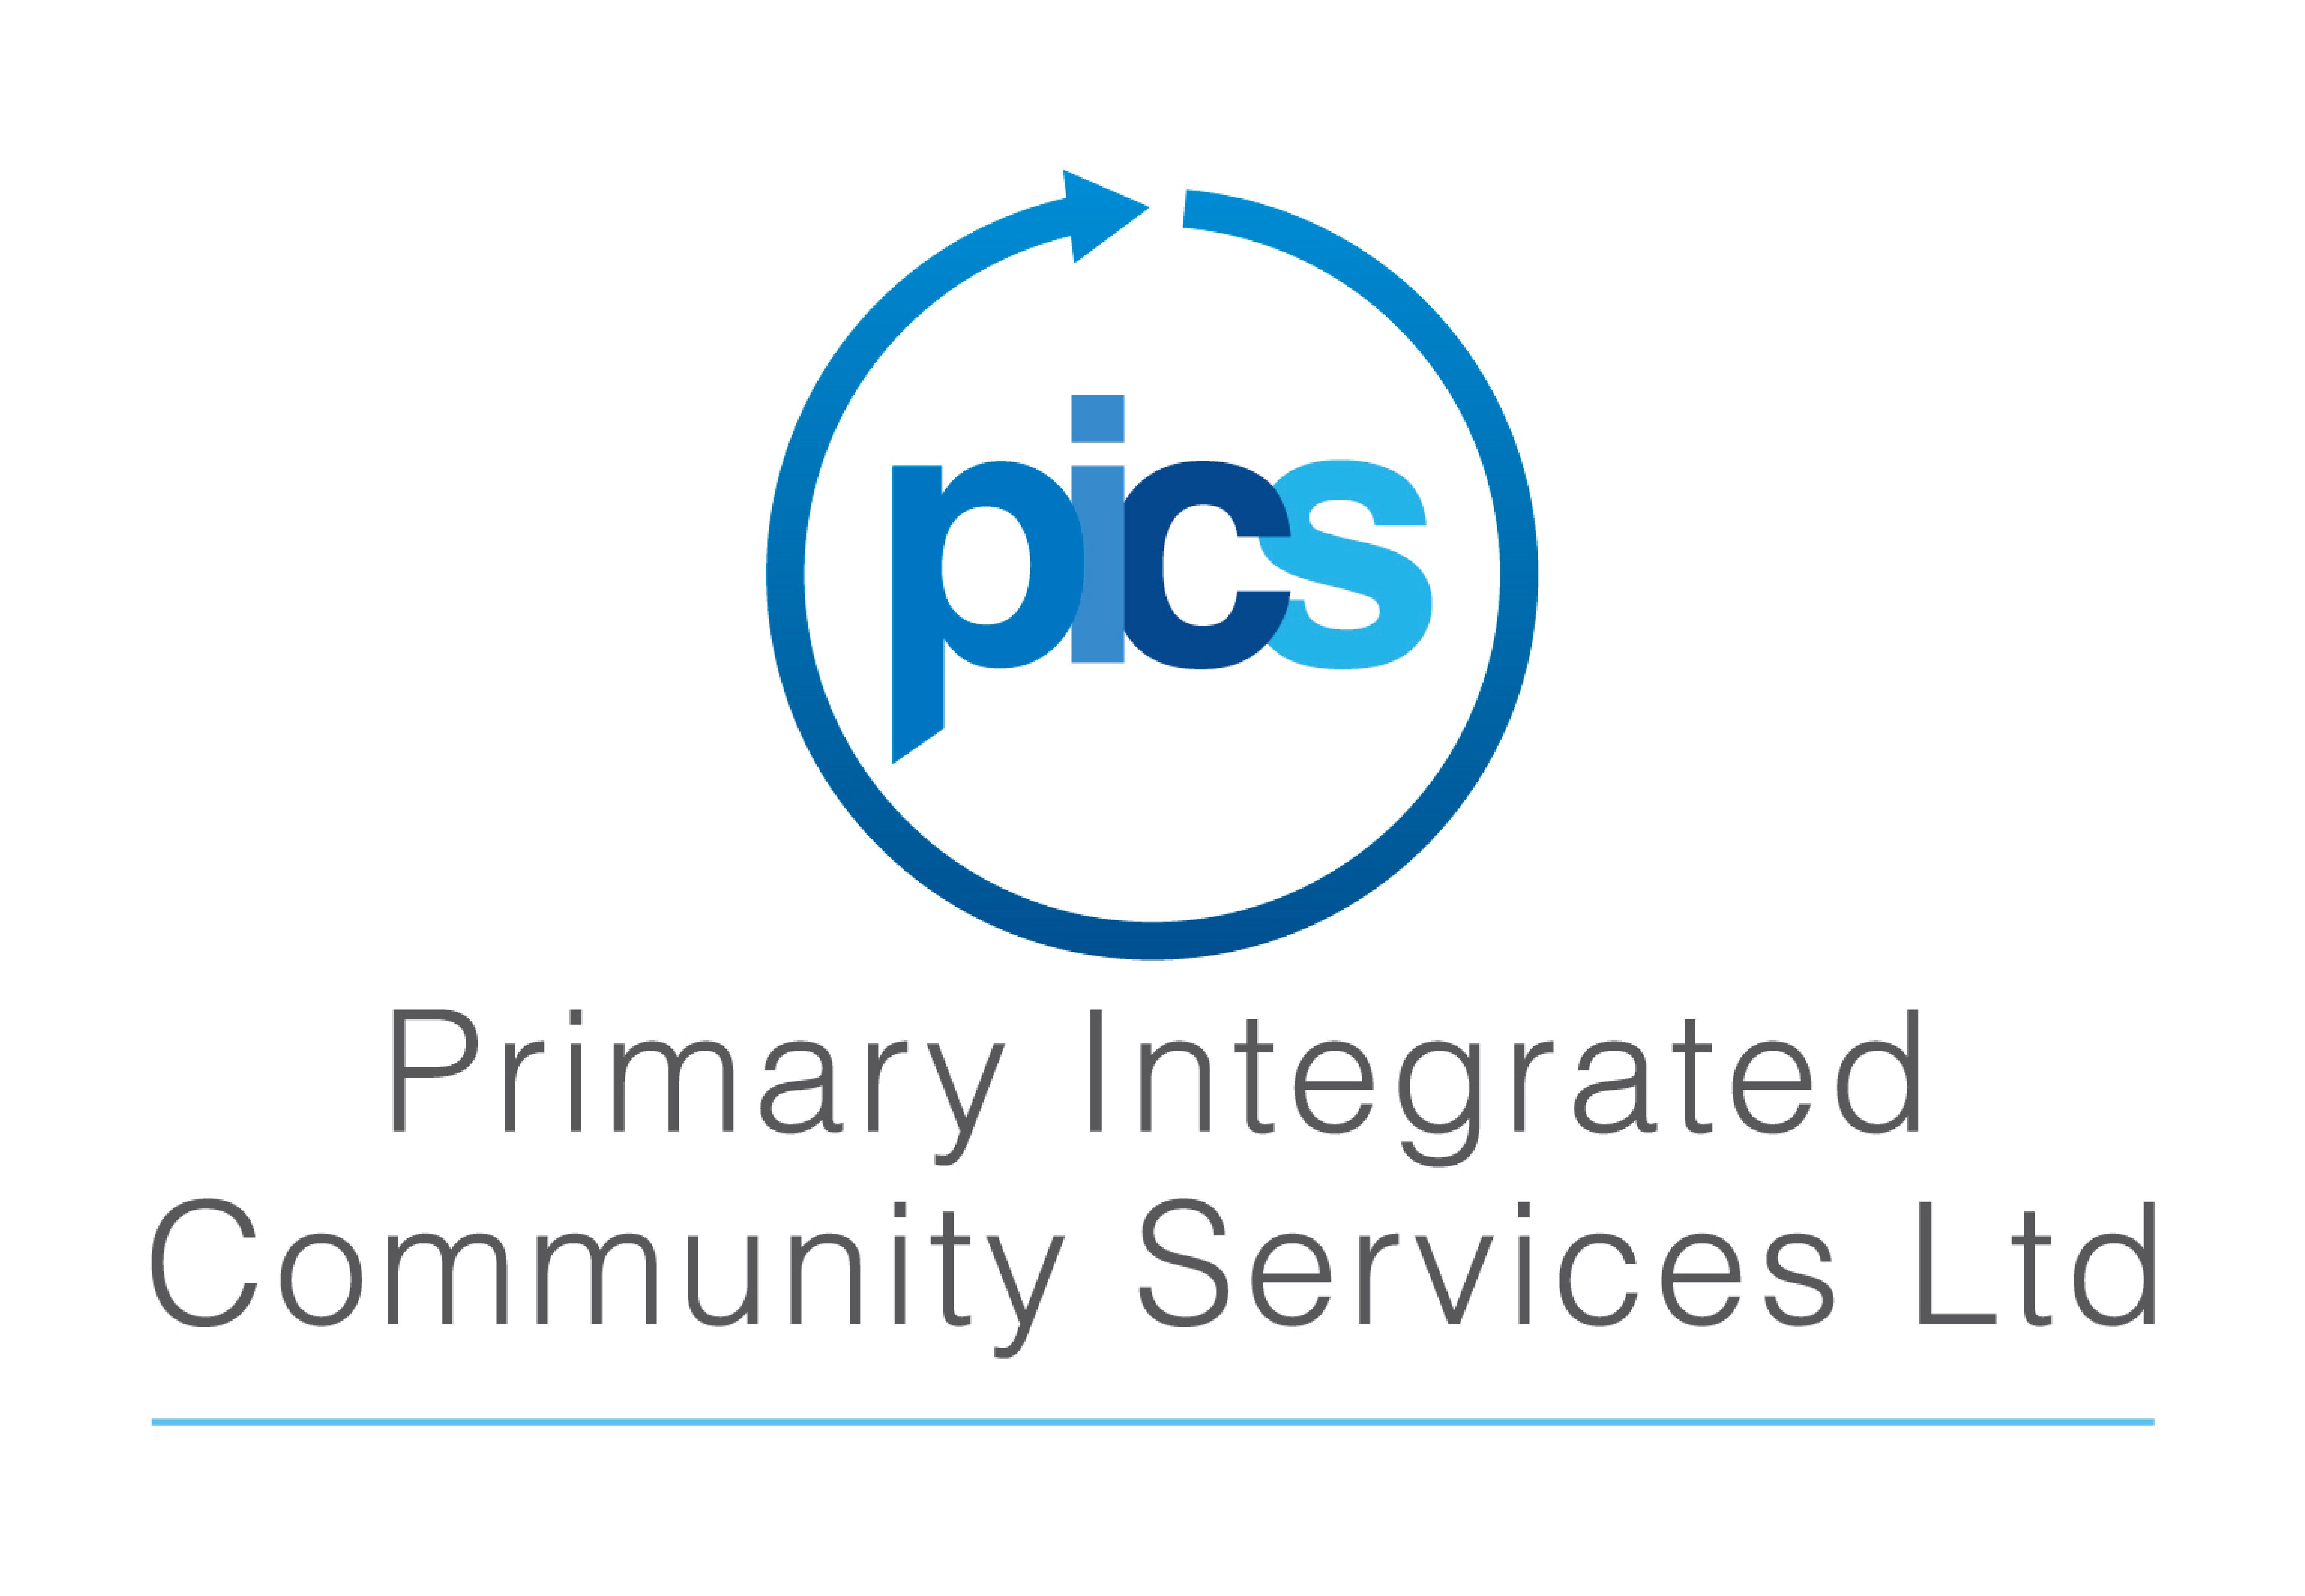 PICS-logo.png